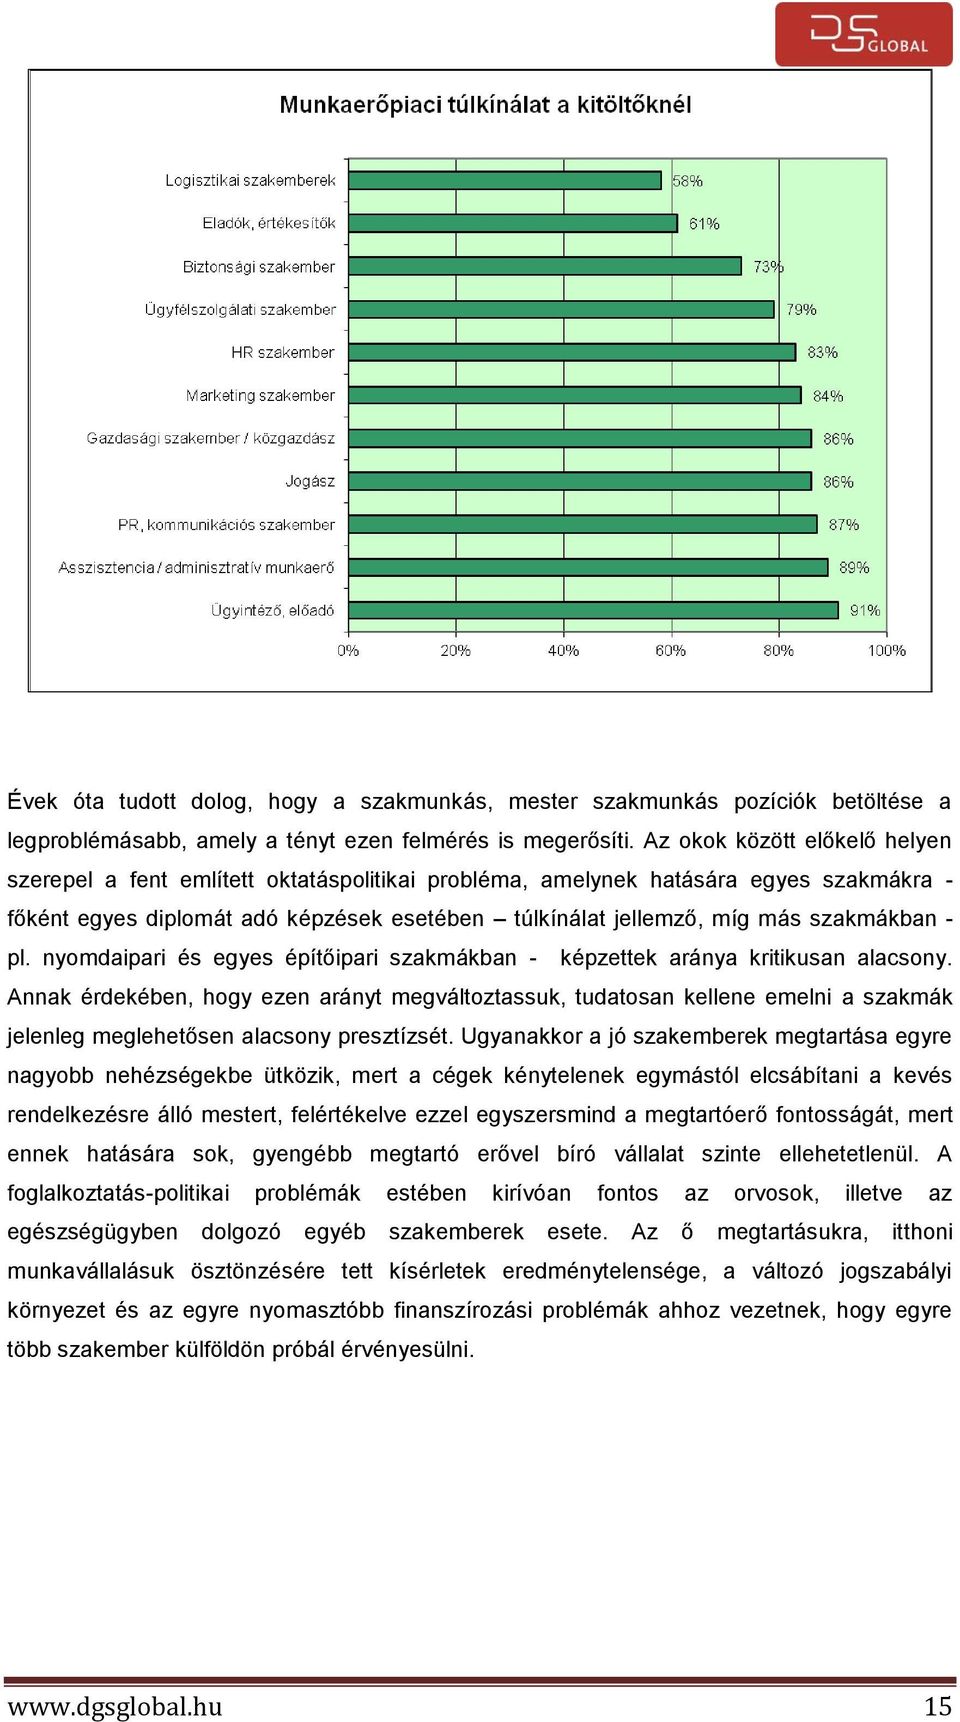 szakmákban - pl. nyomdaipari és egyes építőipari szakmákban - képzettek aránya kritikusan alacsony.